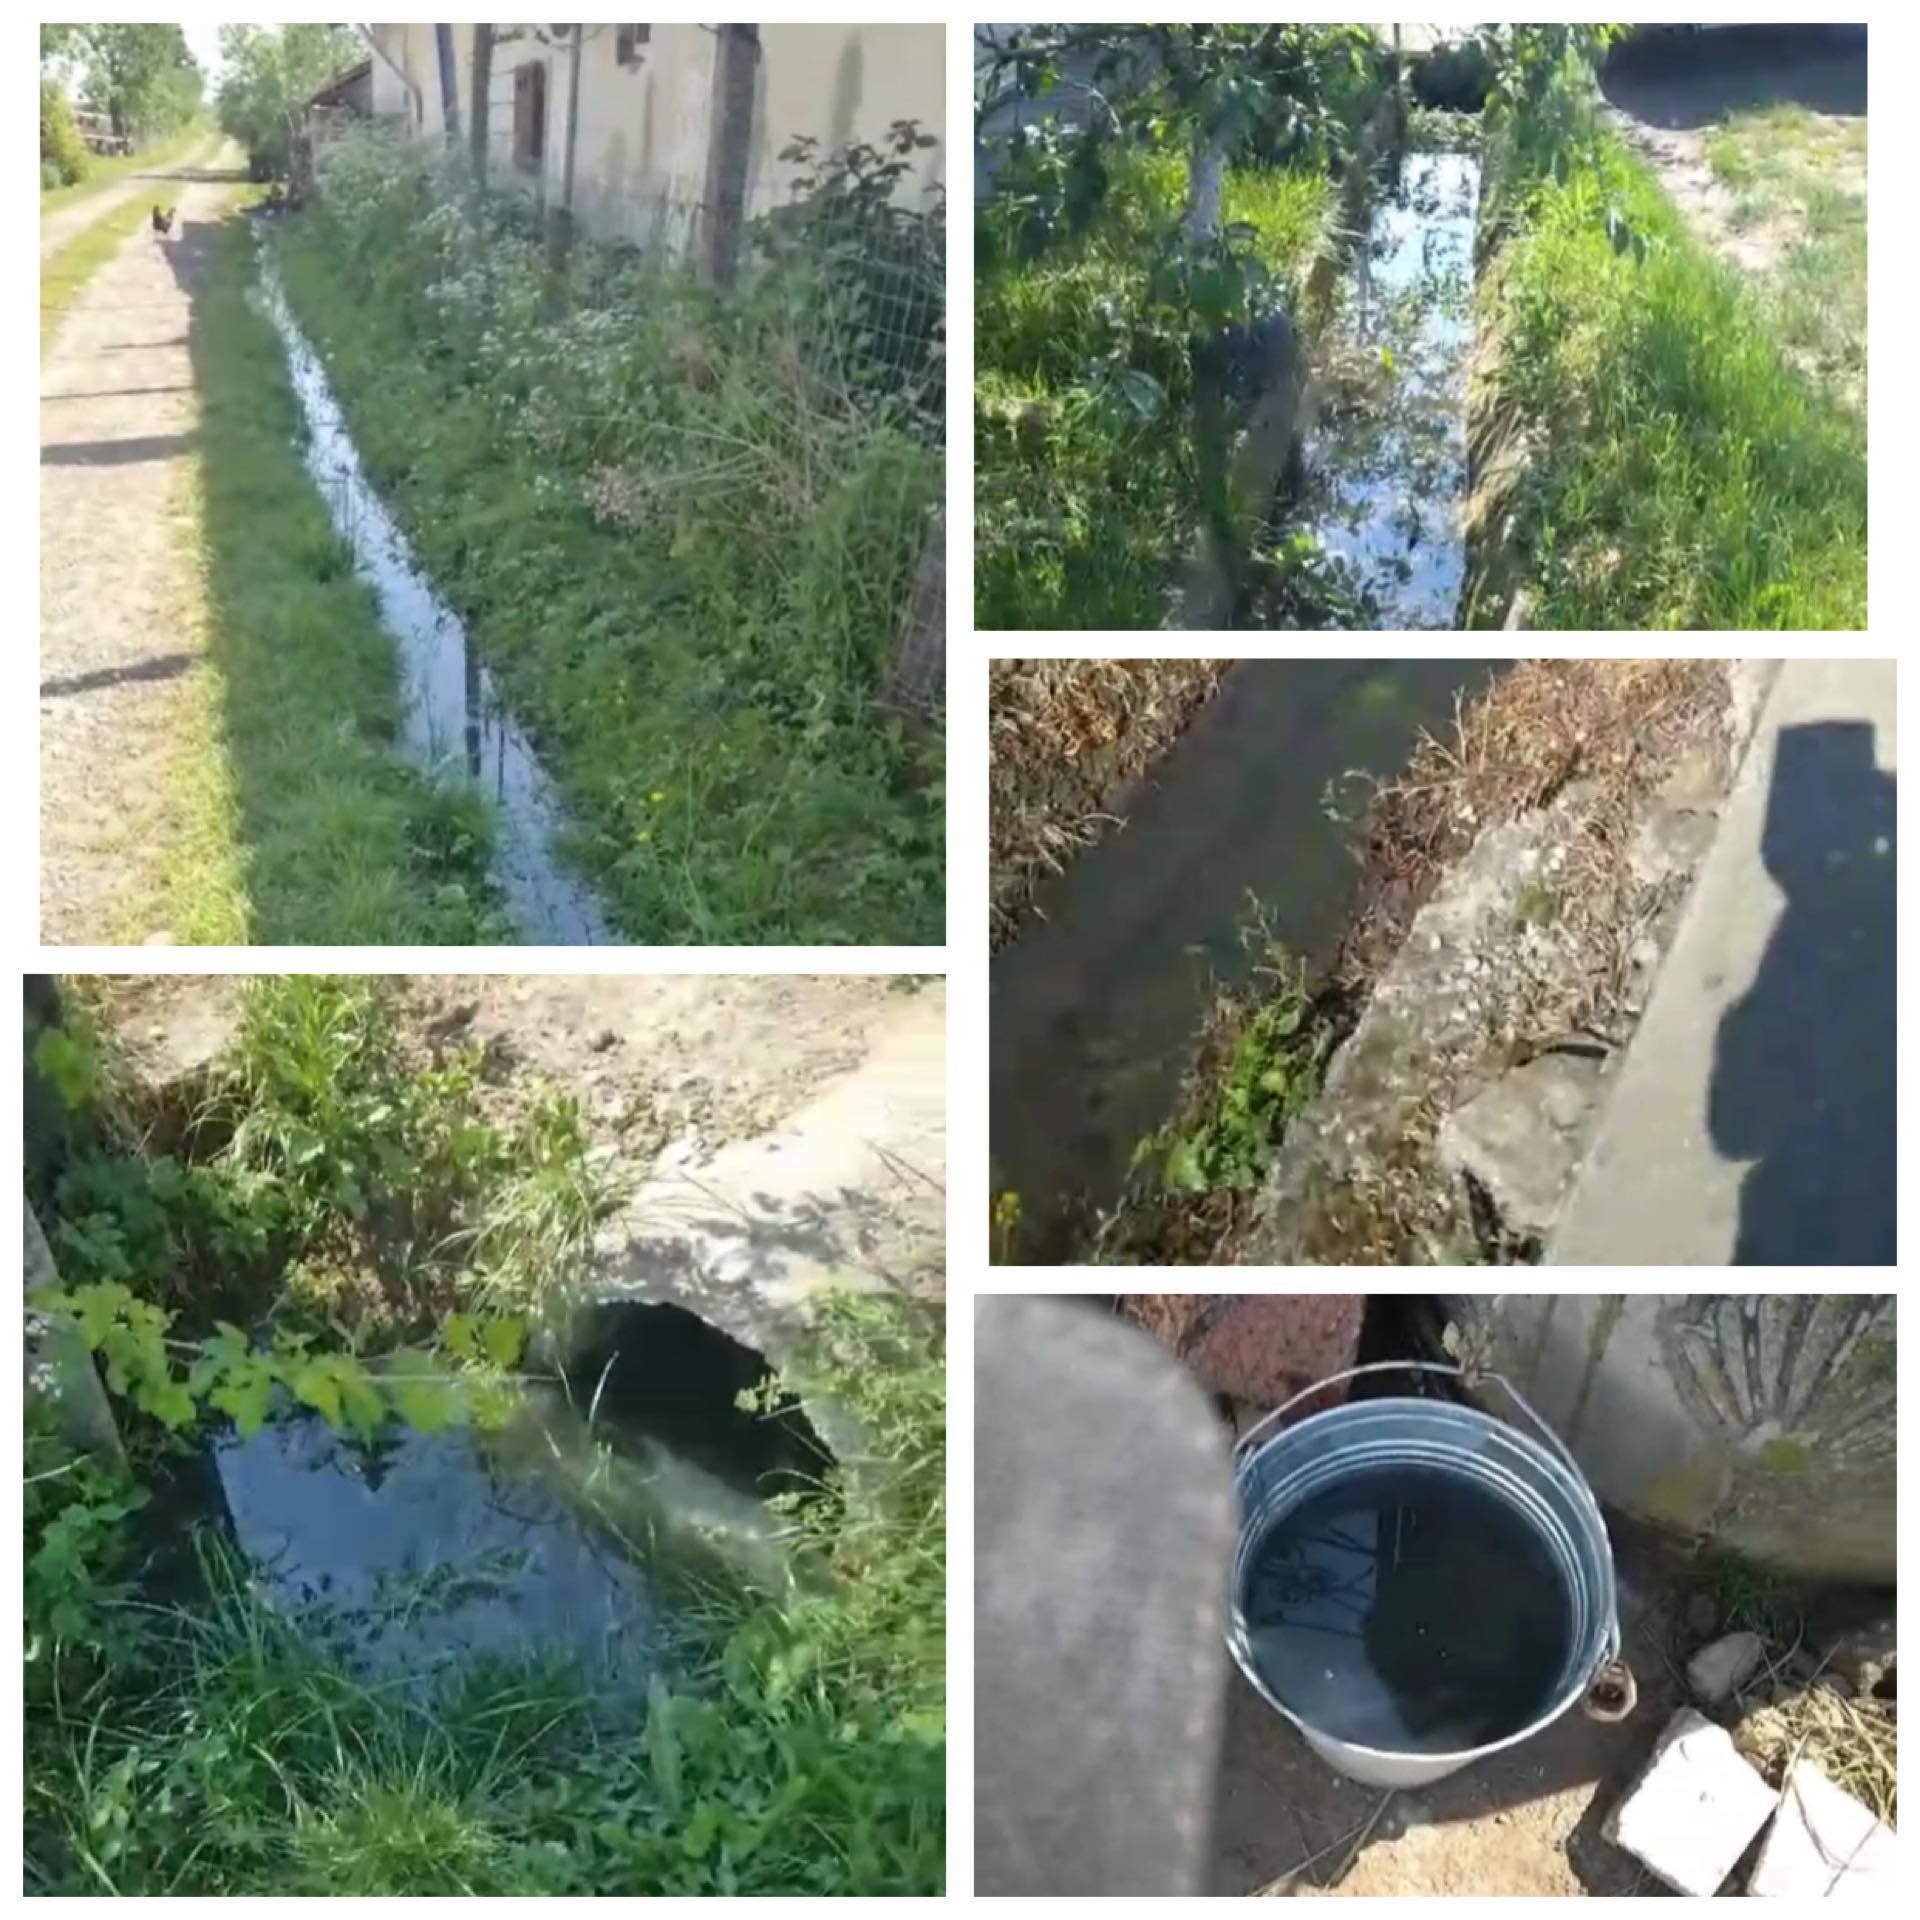 EXCLUSIV VIDEO: După ce nu au avut apă, a doua zi de Paști au refulat canalizarea în satul Mânău, Ulmeni